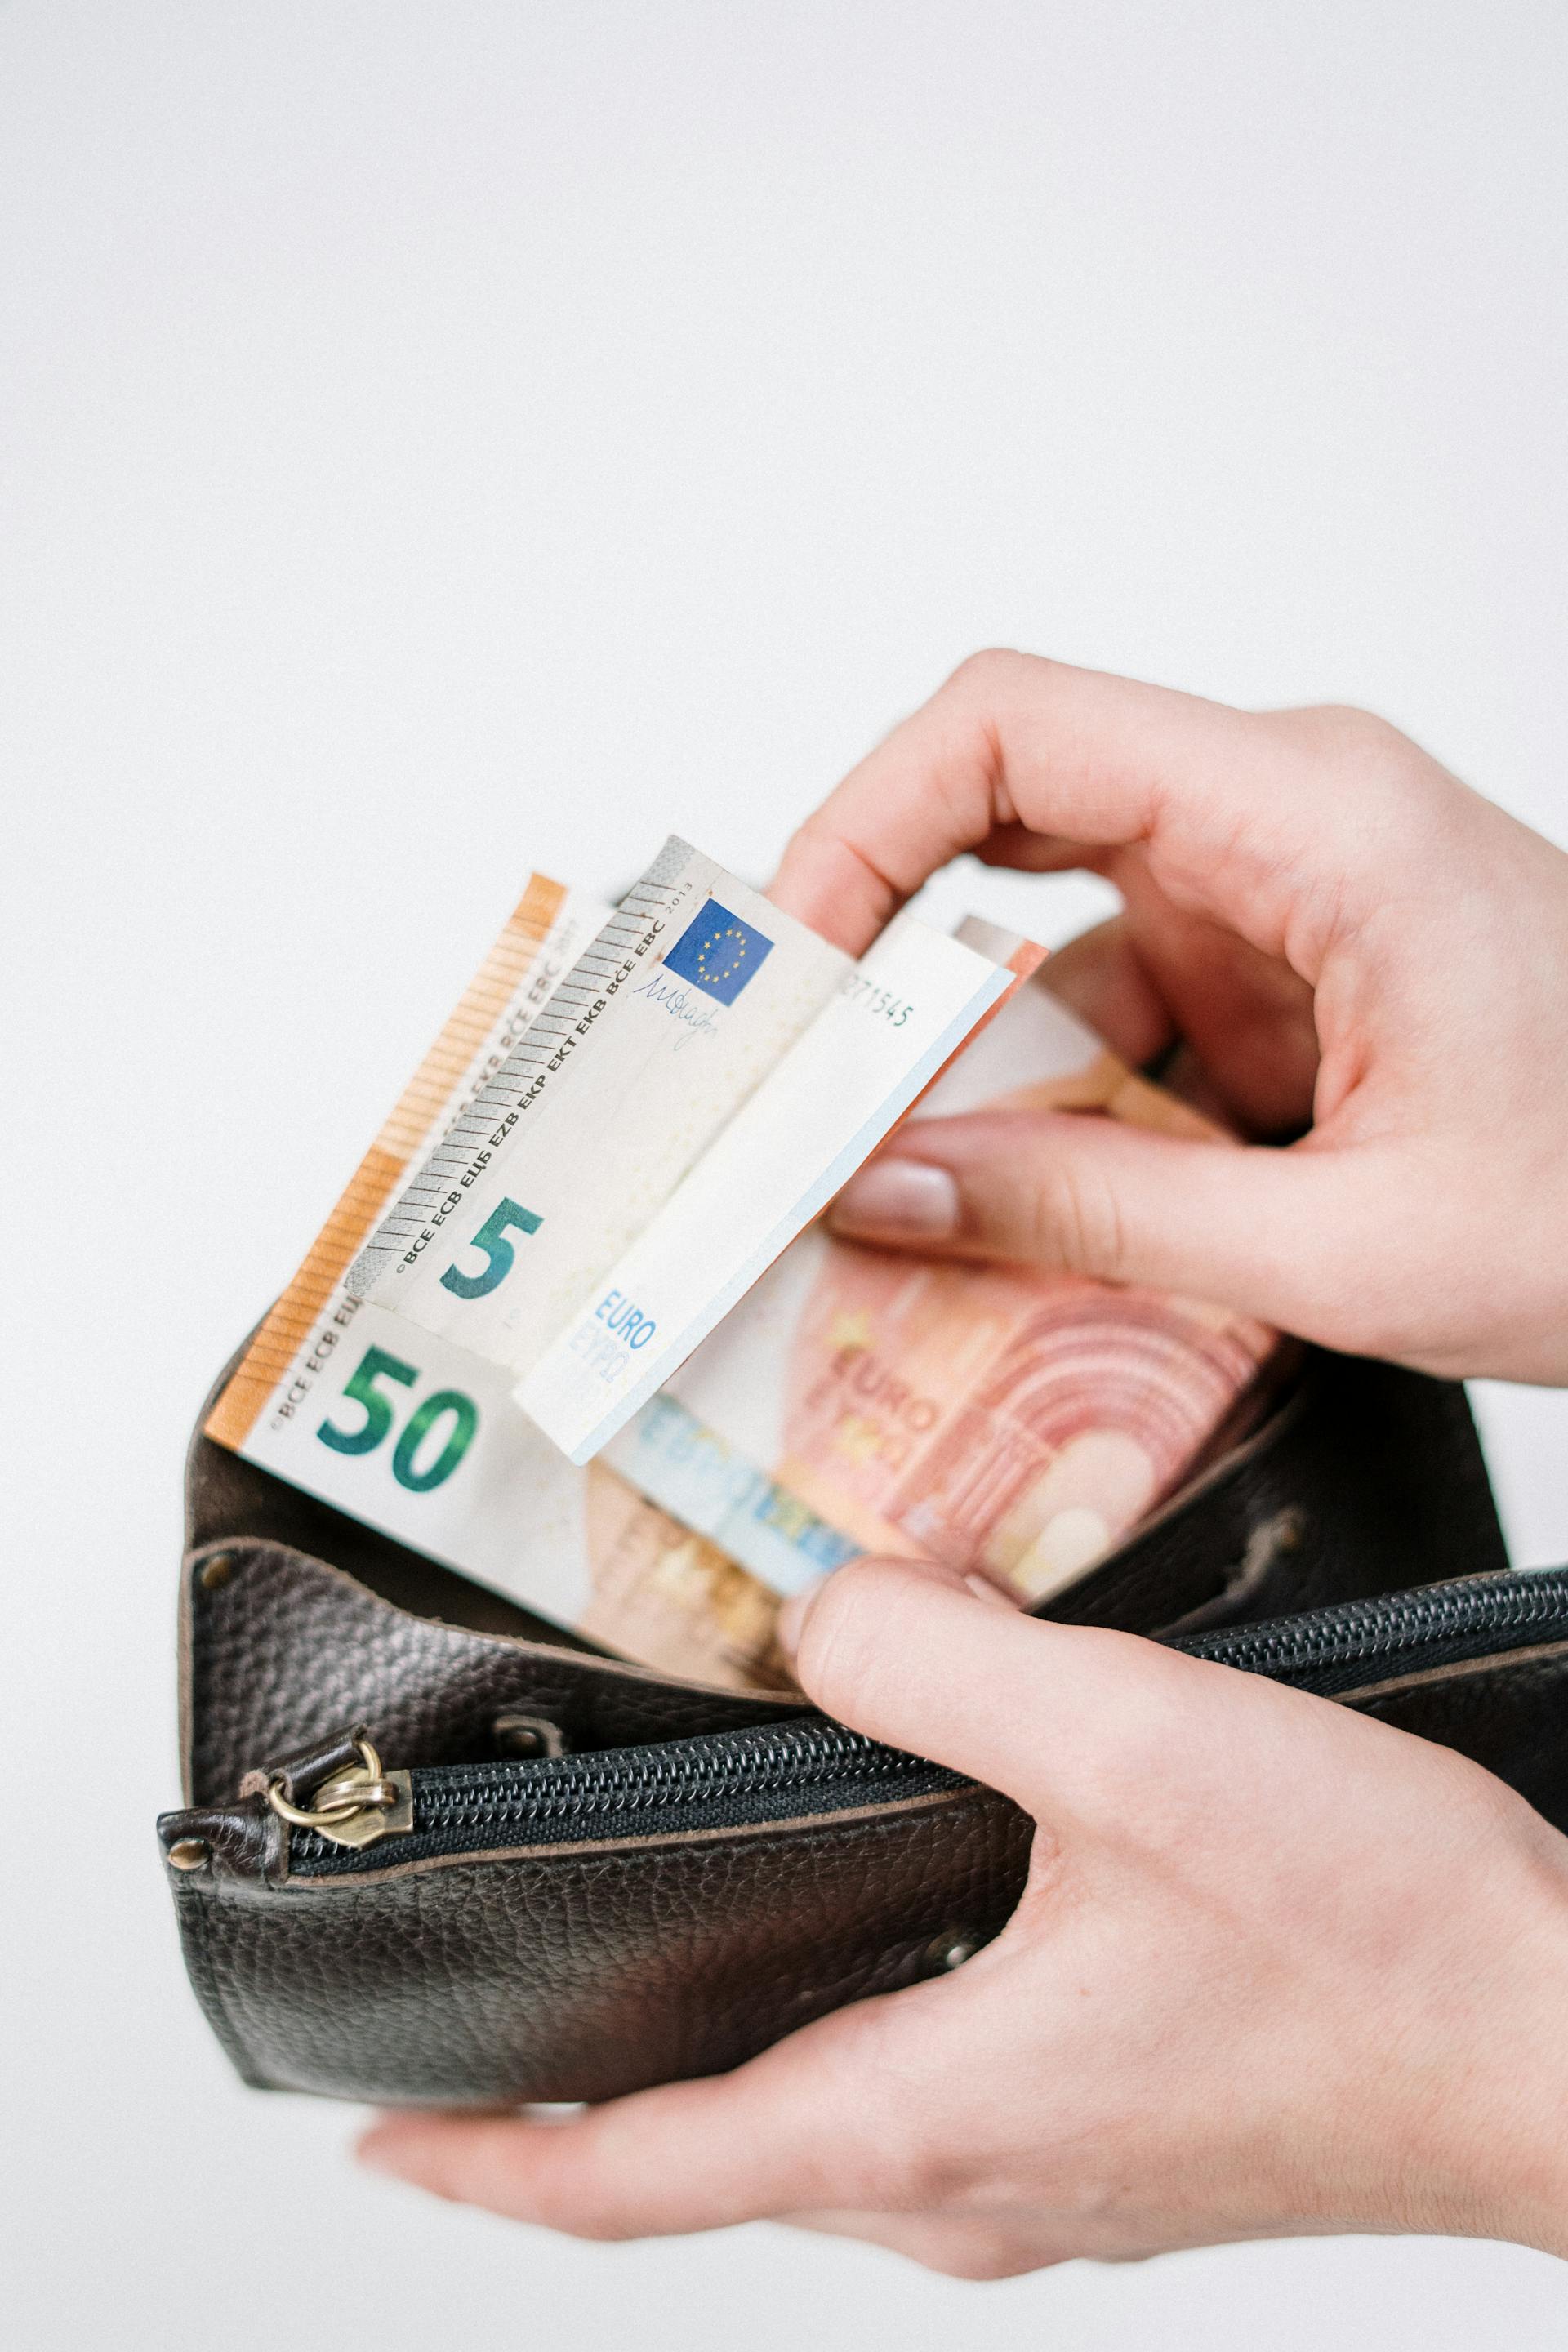 Une personne prenant de l'argent dans son portefeuille | Source : Pexels